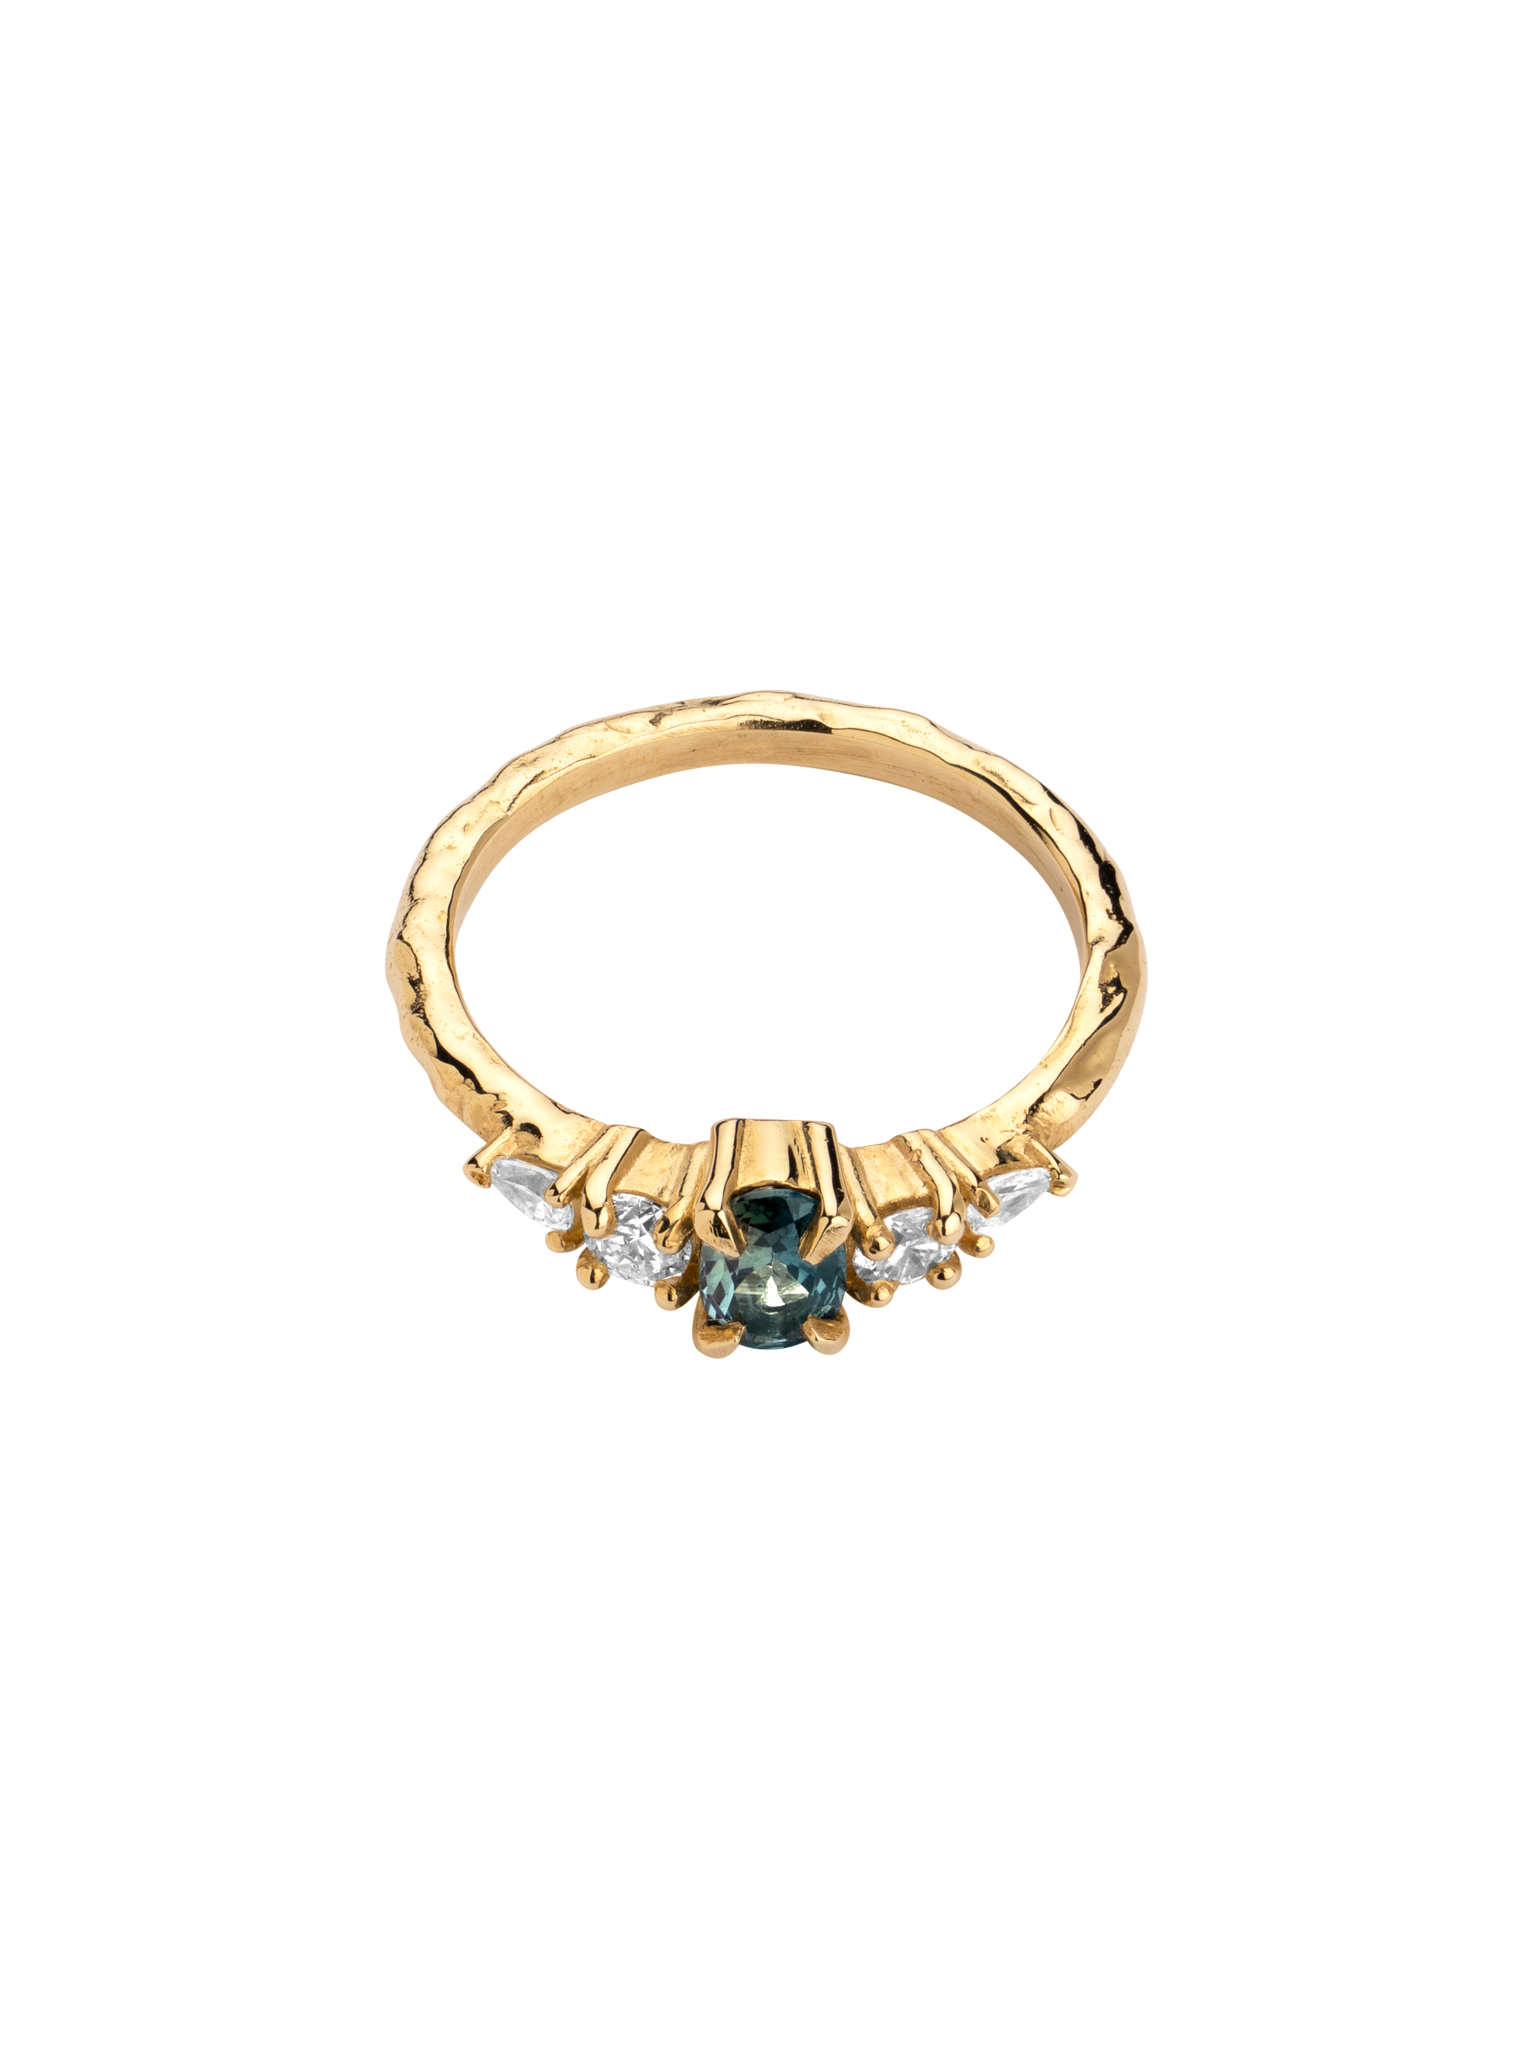 Gianna sapphire & diamond engagement ring